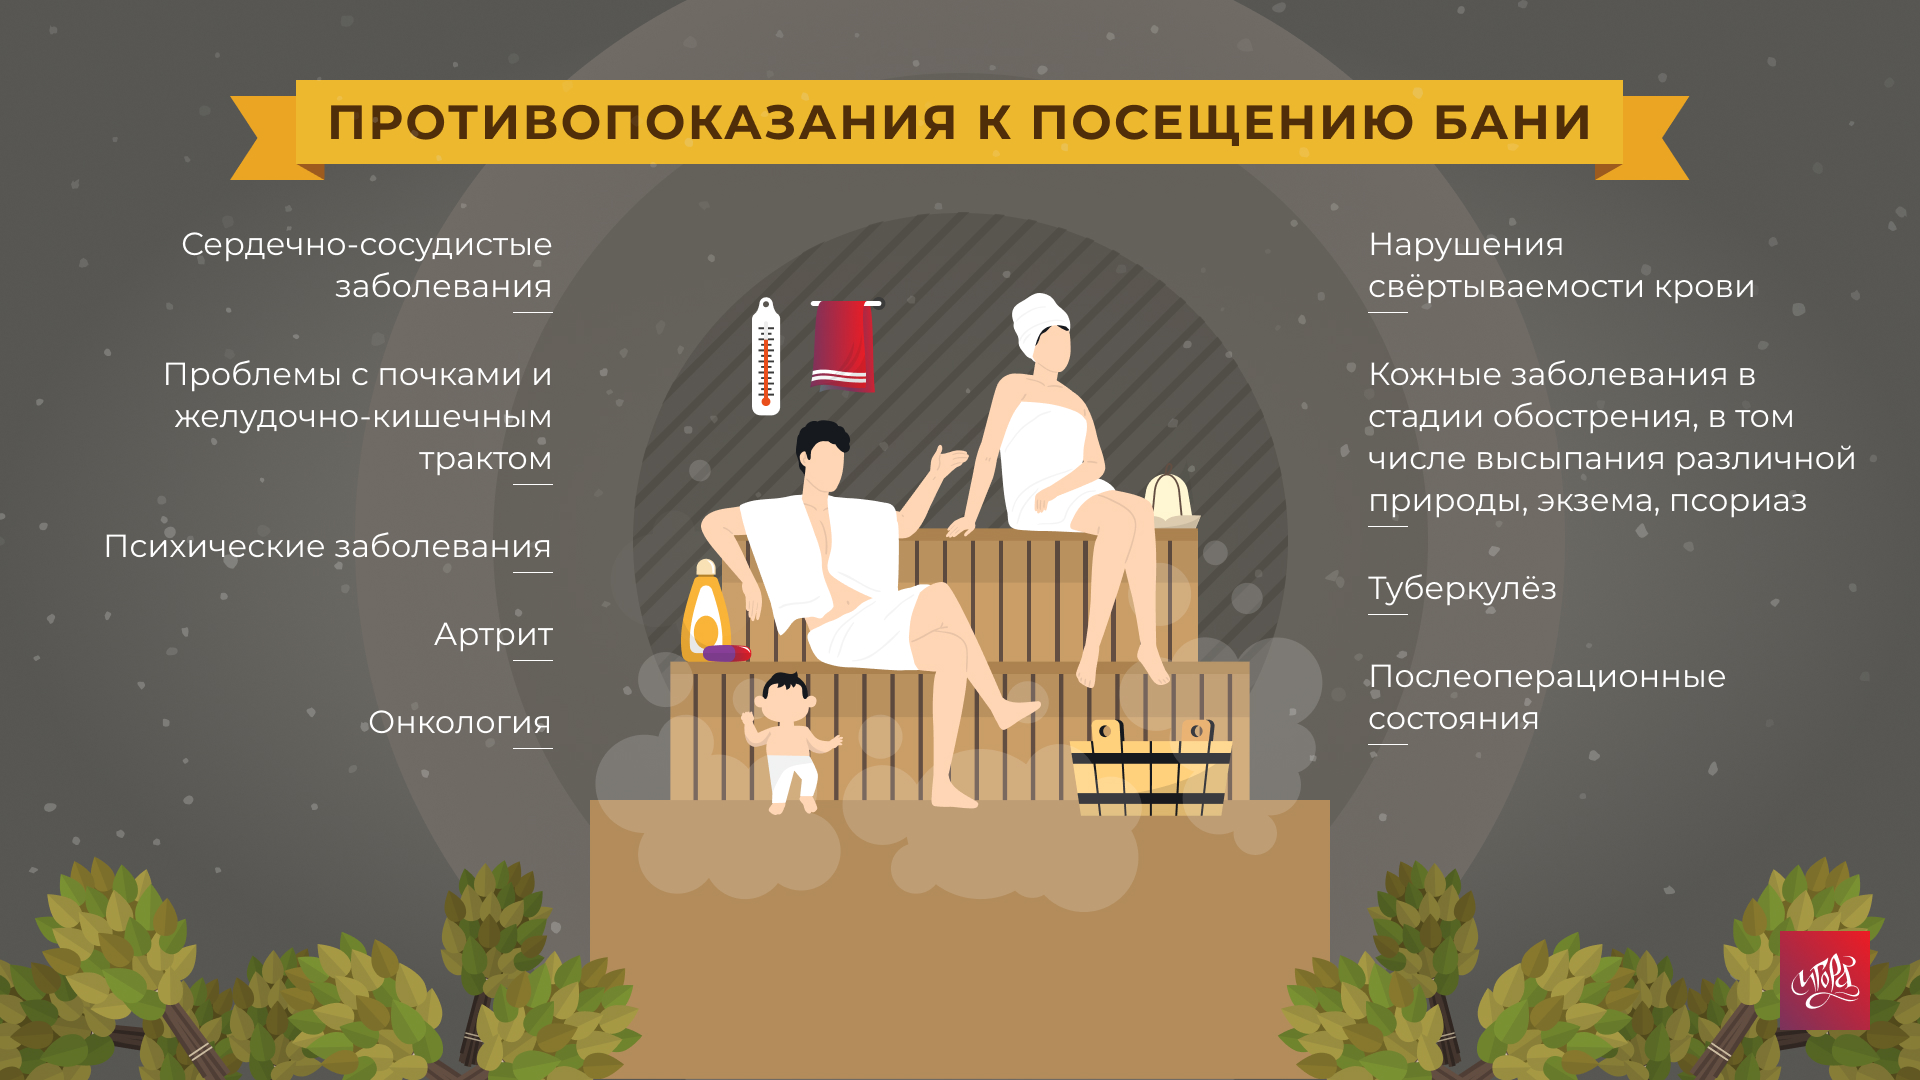 инфографика противопоказания для бани